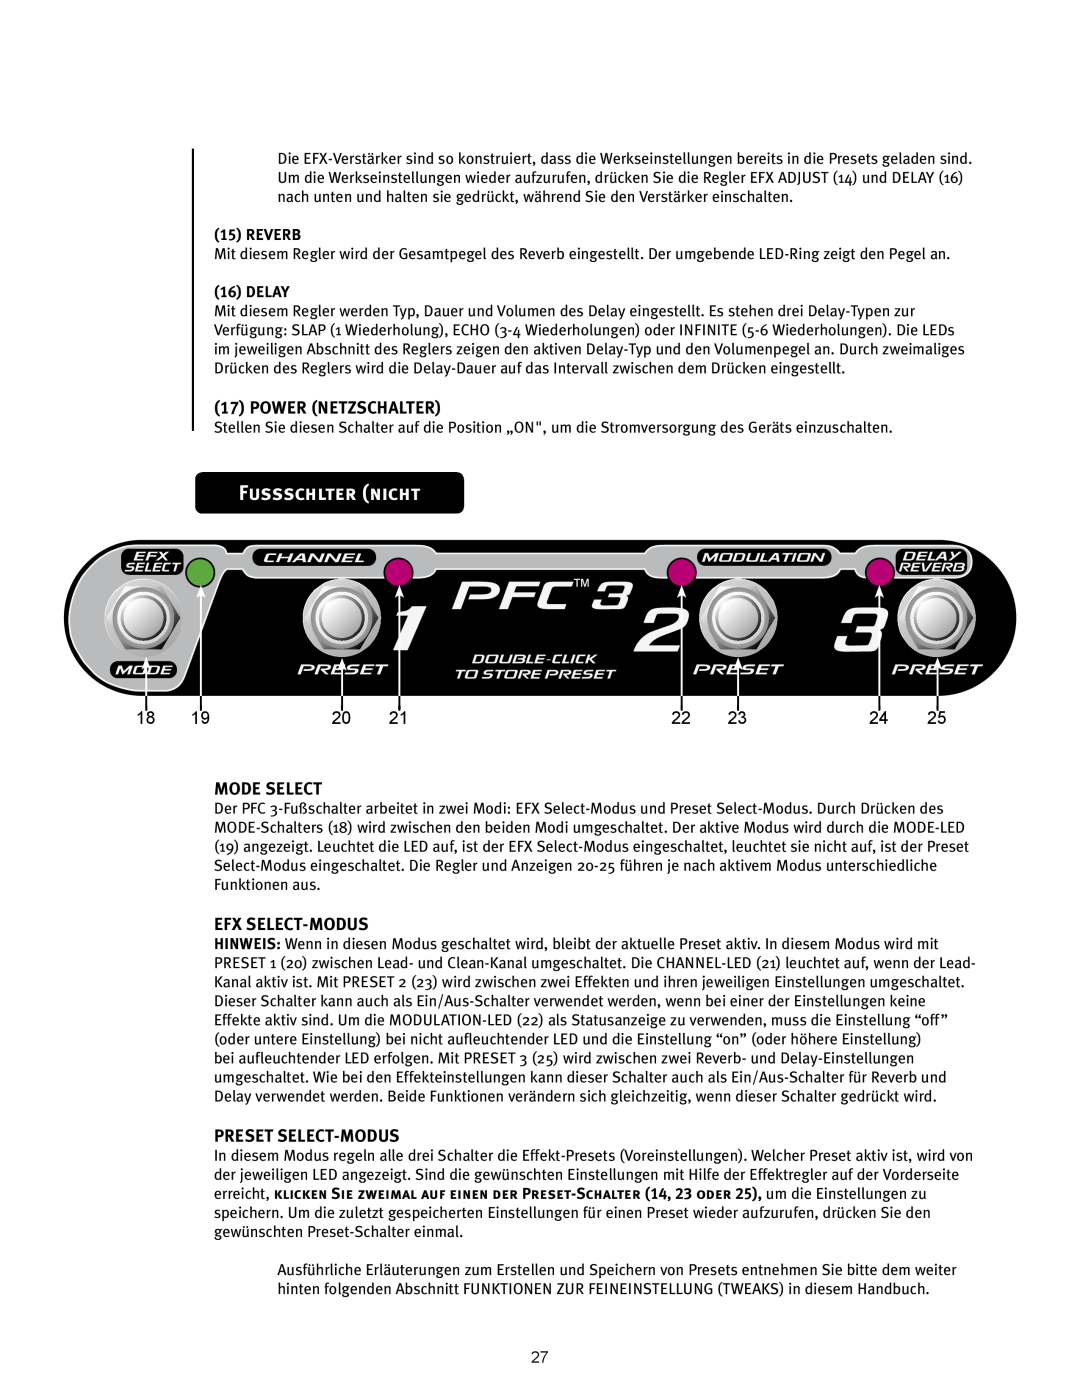 Peavey 110 EFX Fussschlter nicht, PFCTM3, Power Netzschalter, Mode Select, Efx Select-Modus, Preset Select-Modus, Reverb 